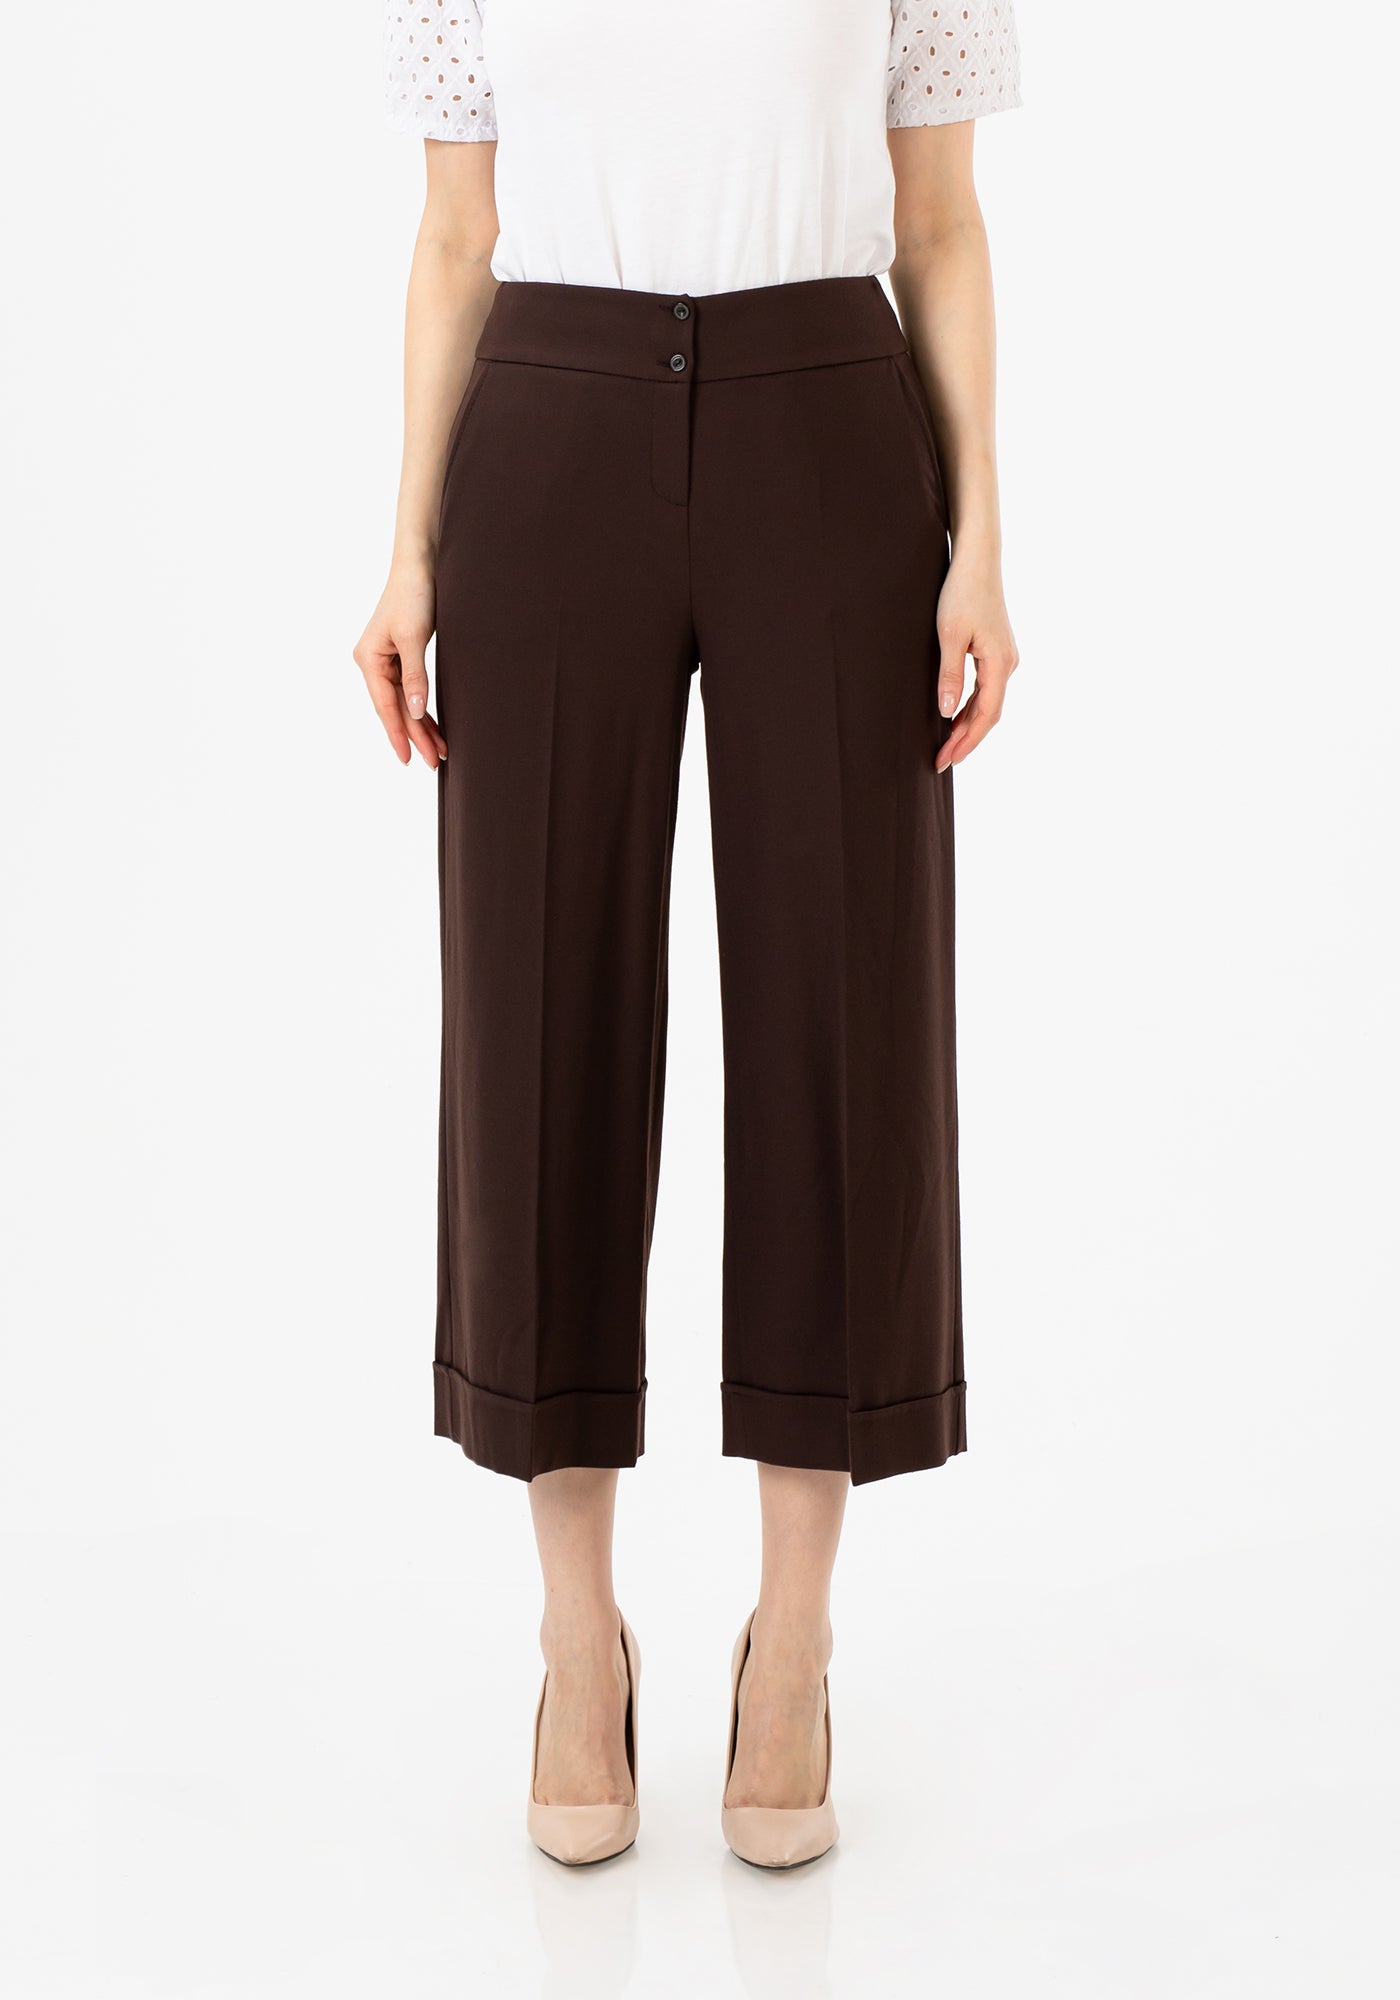 Women's Brown Wide Leg Dress Pants - High Waist, Timeless and Chic – G-Line